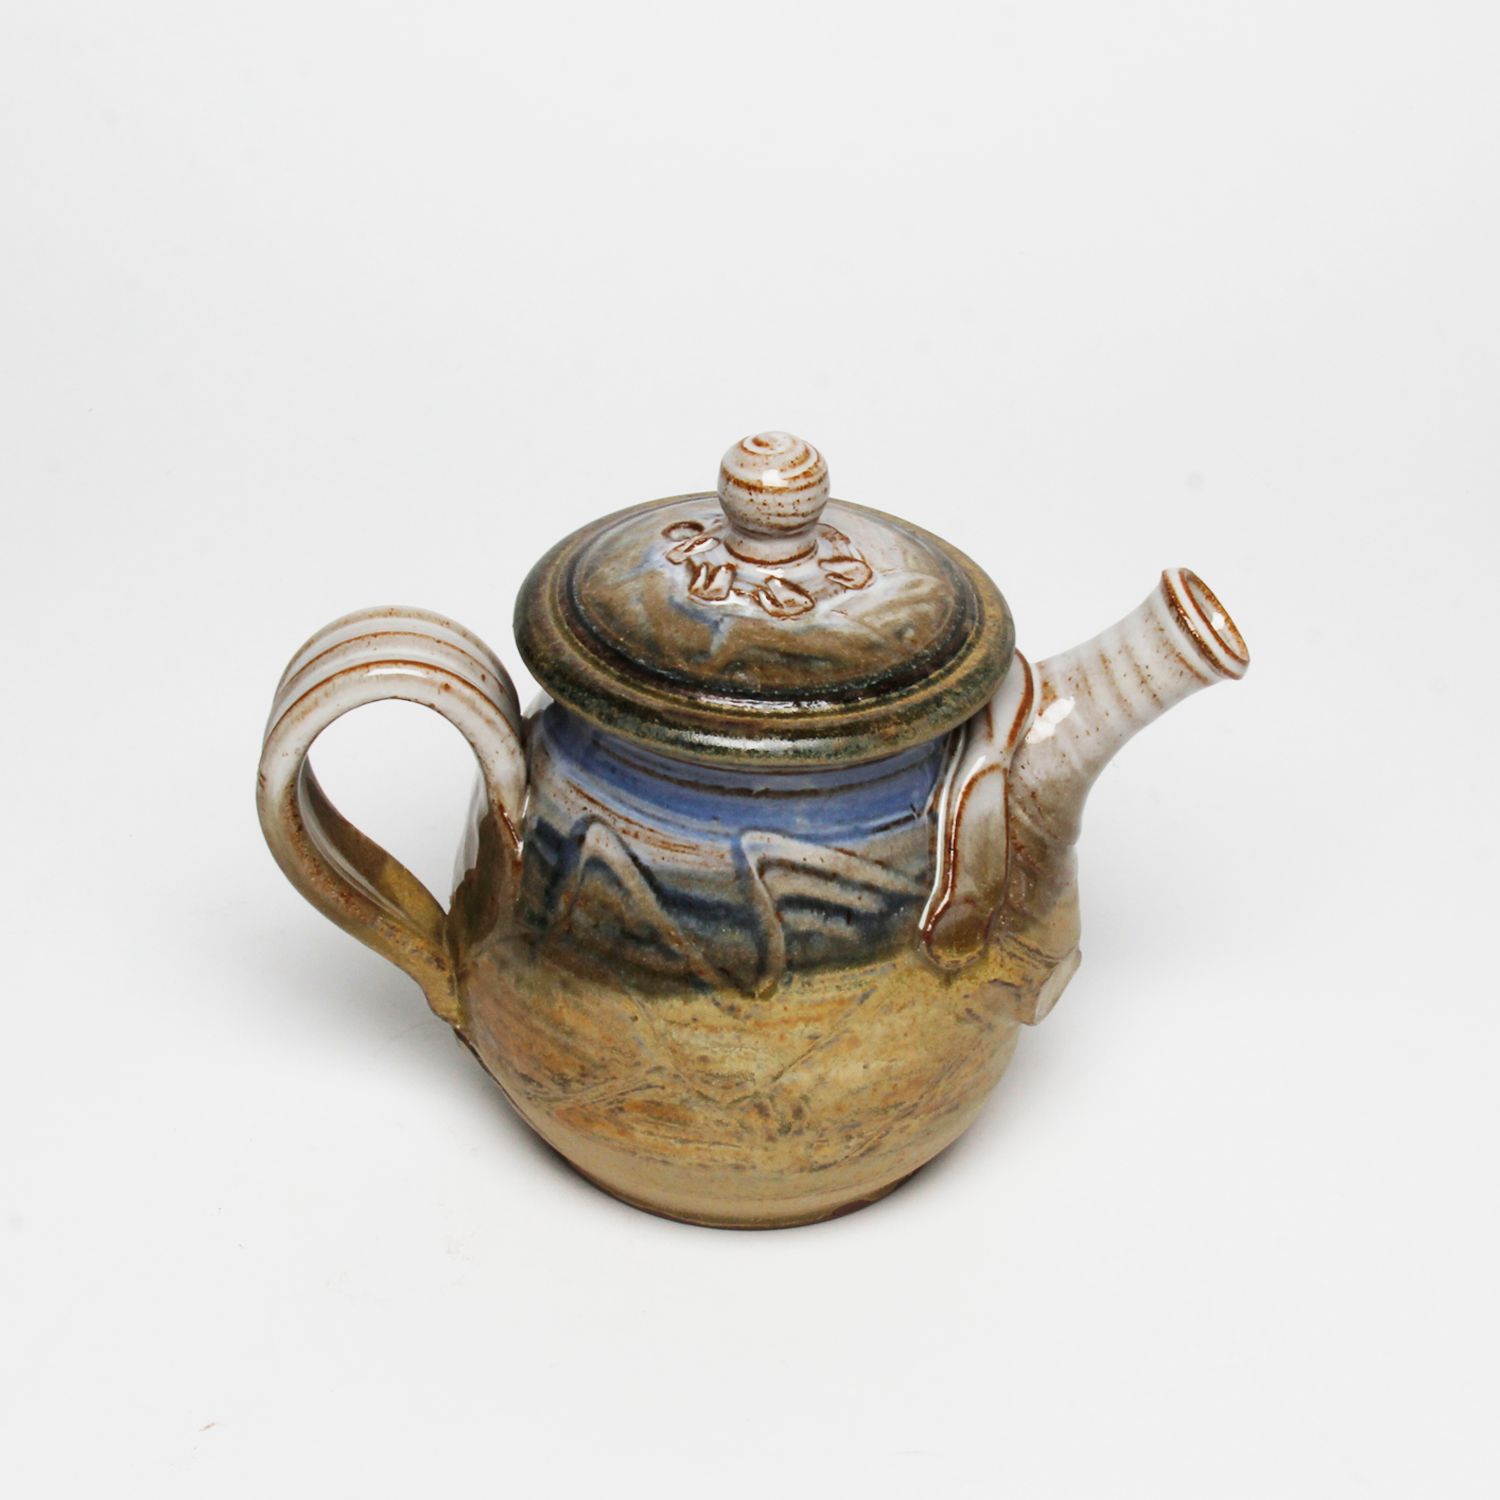 Wayne Cardinalli: Blue Teapot Product Image 2 of 4